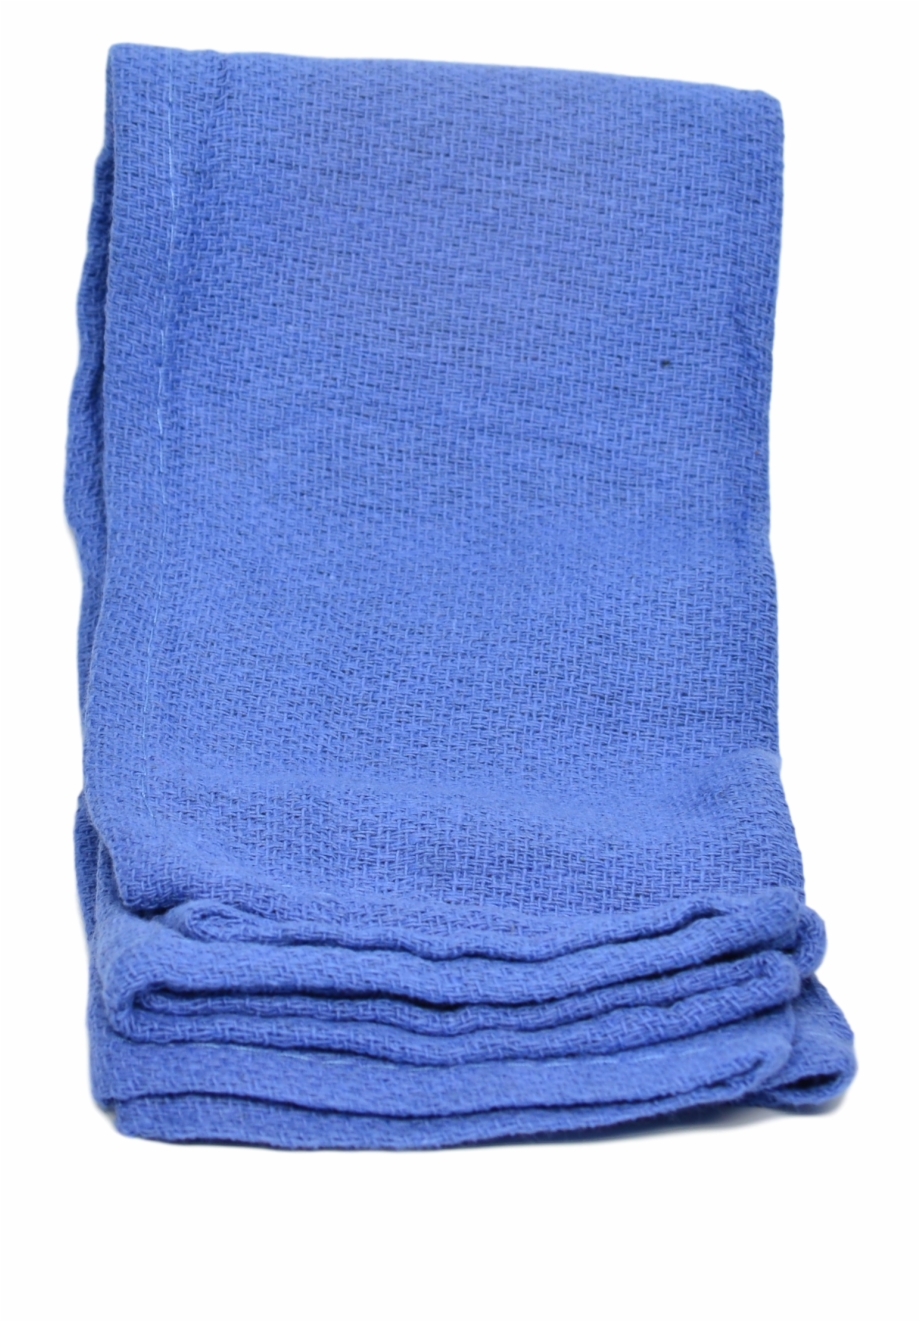 Or Towels Beach Towel